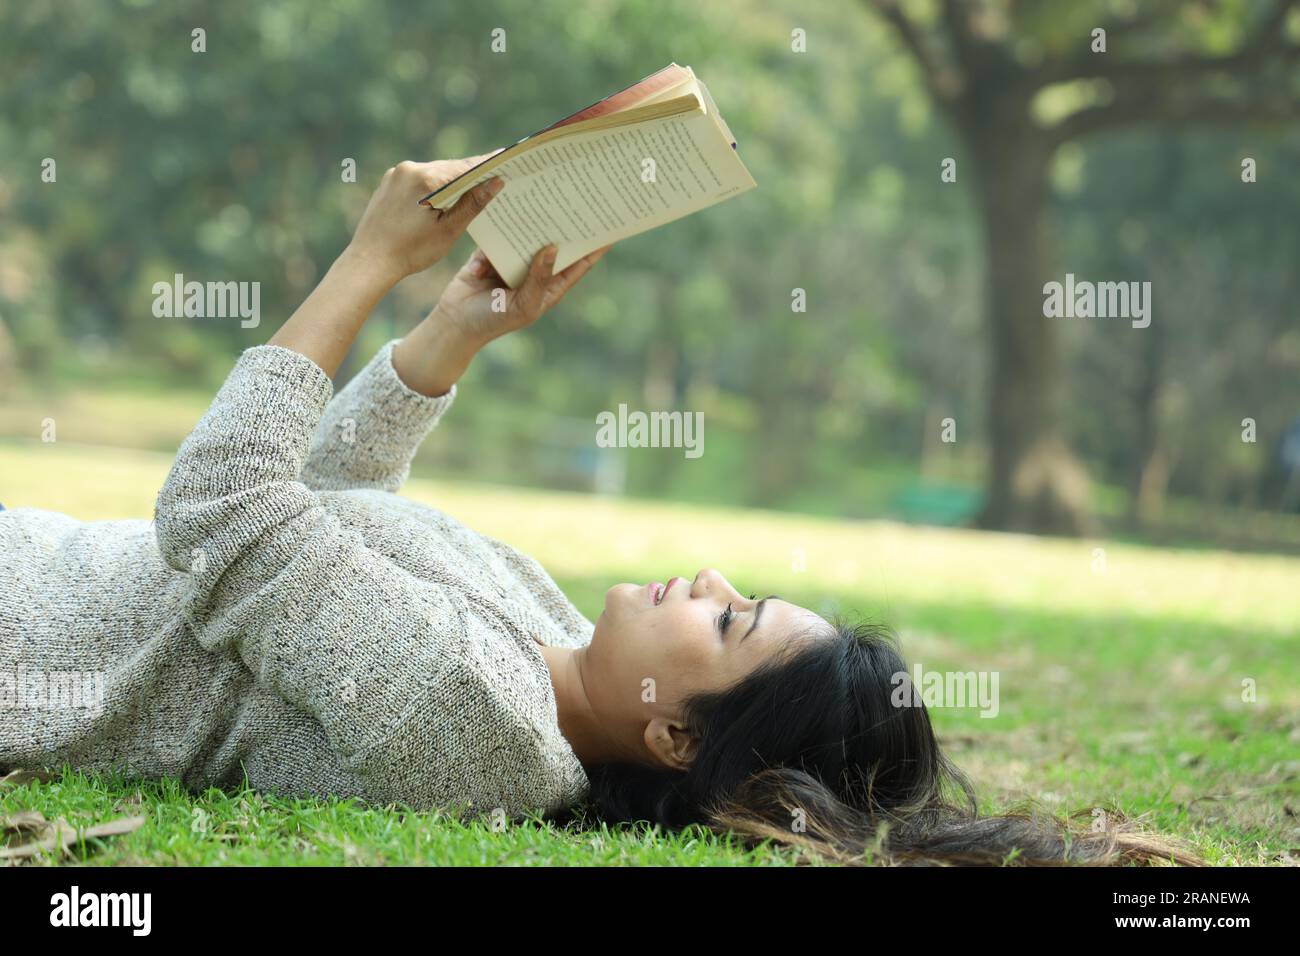 Ein hübsches College-Mädchen, das ein Buch liest, das im Gras liegt an einem Tag. Grüne, ruhige Umgebung Stockfoto